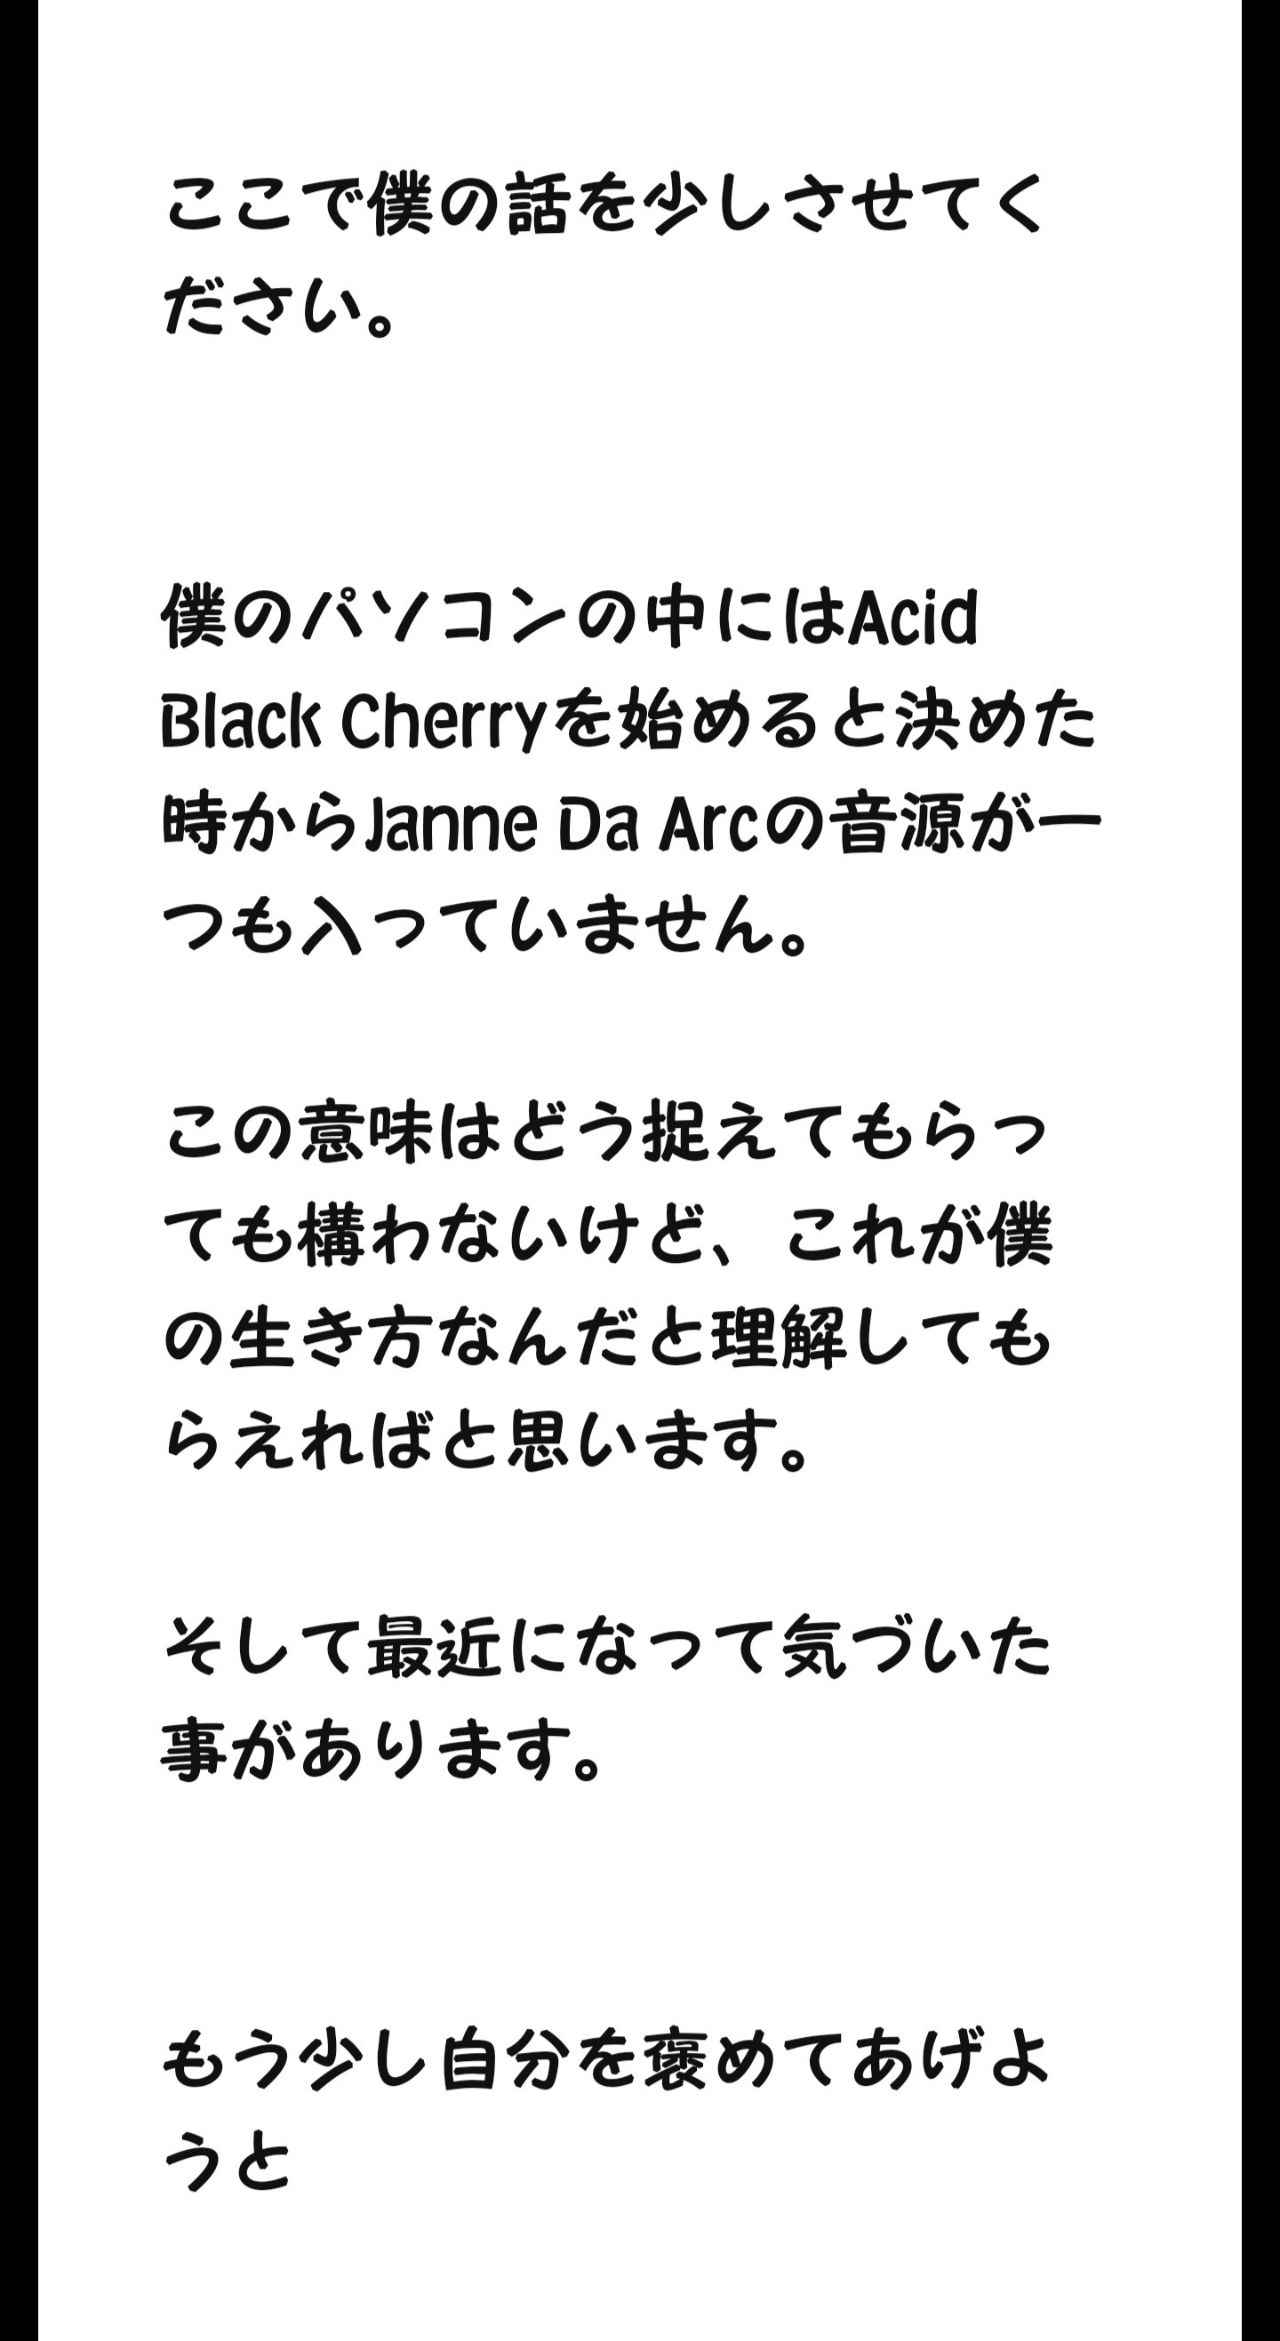 心の行方 Janne Da Arc Acid Black Cherry